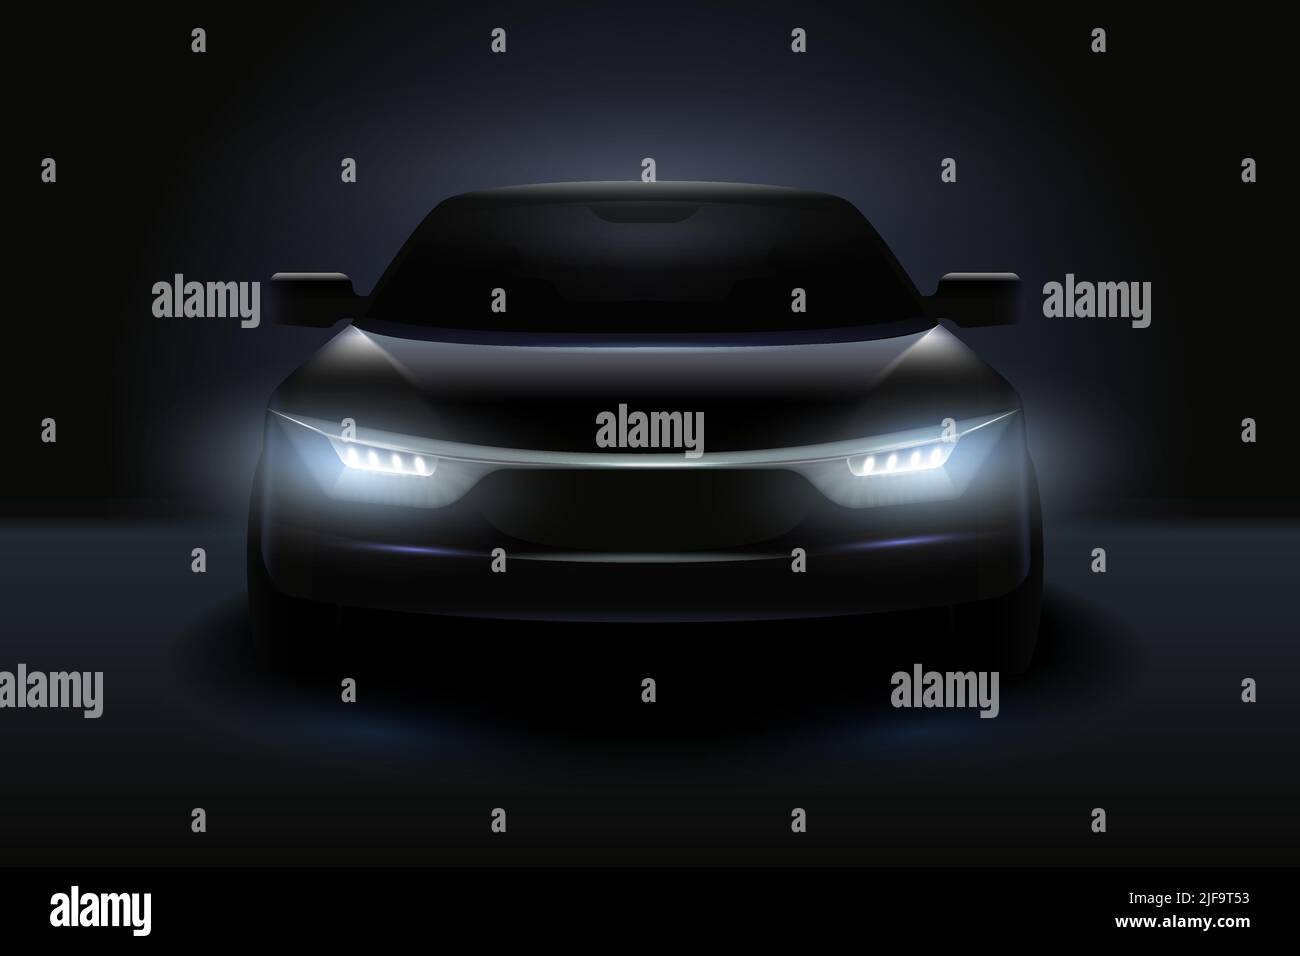 Composición realista de luces led de coche con silueta oscura de automóvil  con faros atenuados y sombras ilustración